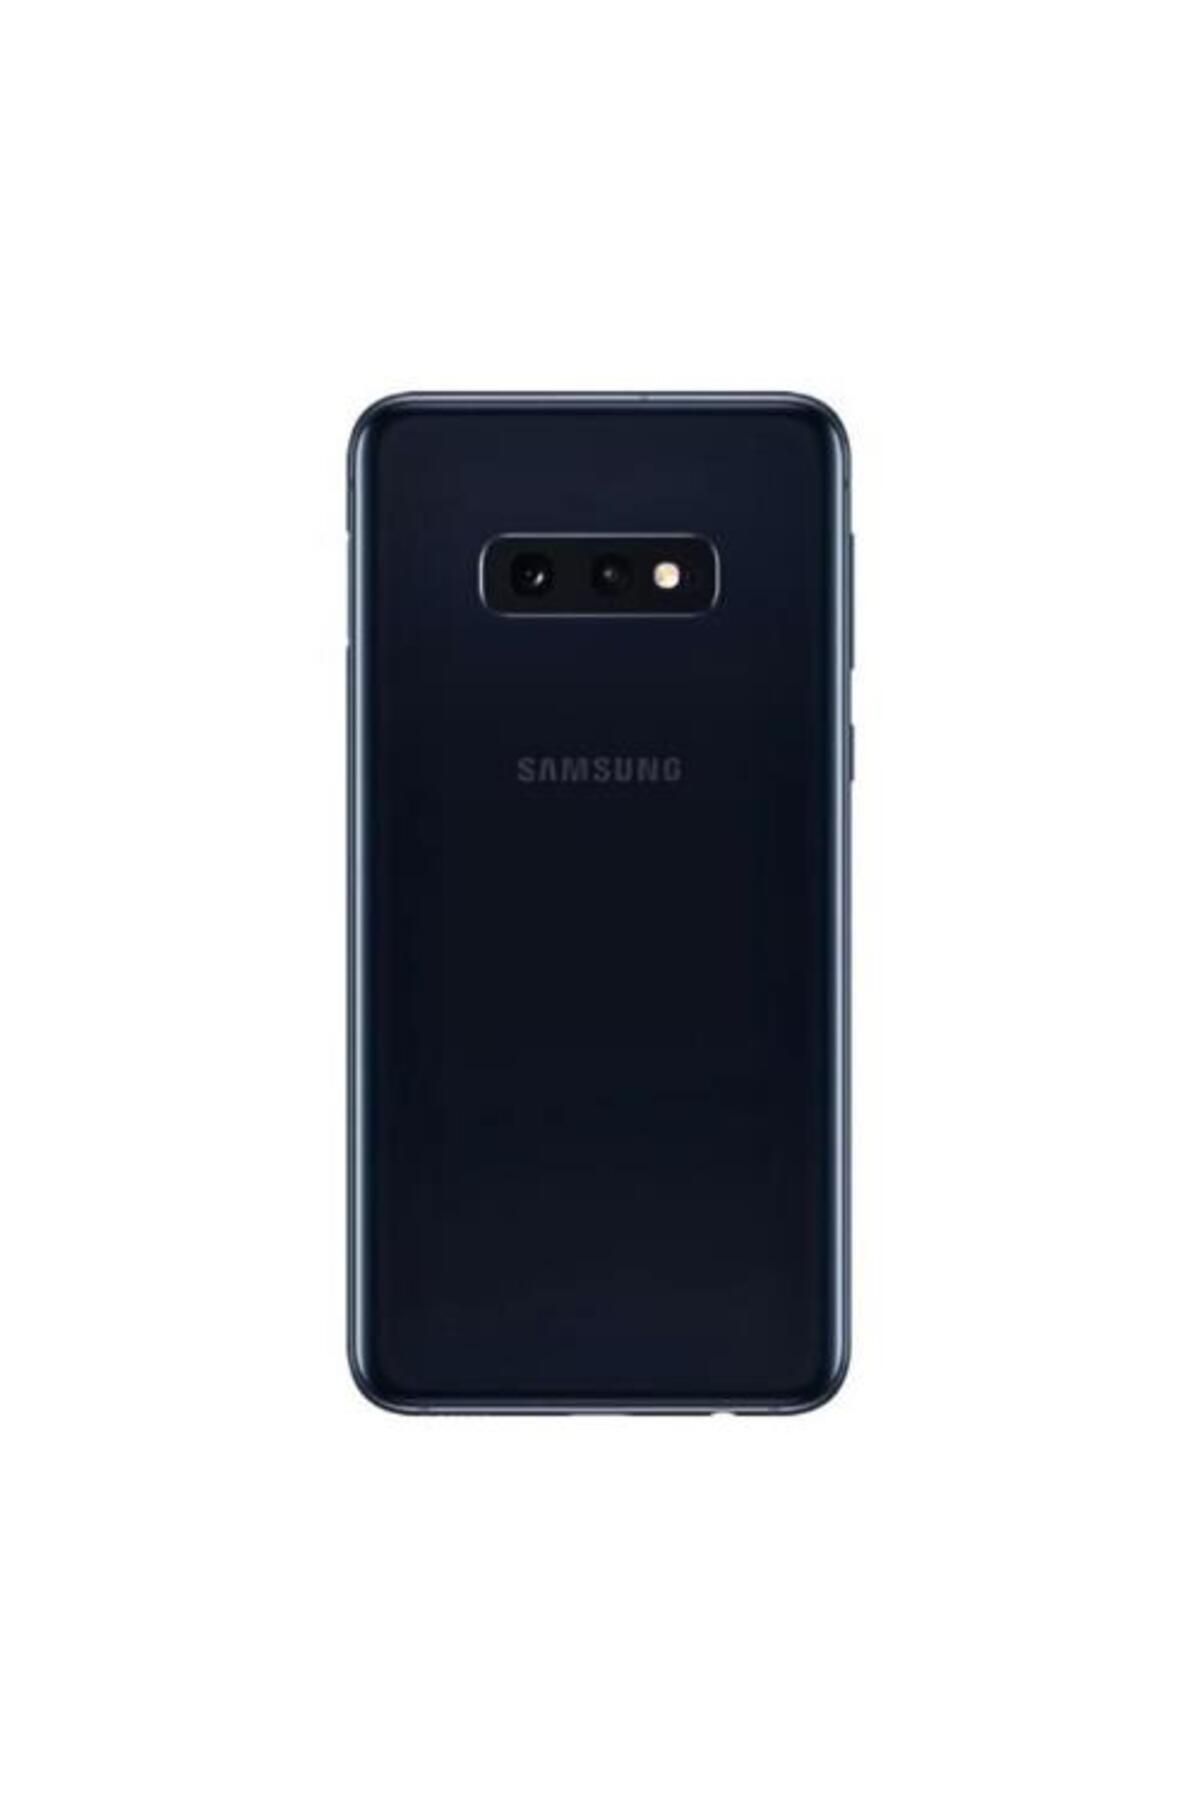 Samsung Galaxy S10E Gray 128GB Yenilenmiş B Kalite (12 Ay Garantili)